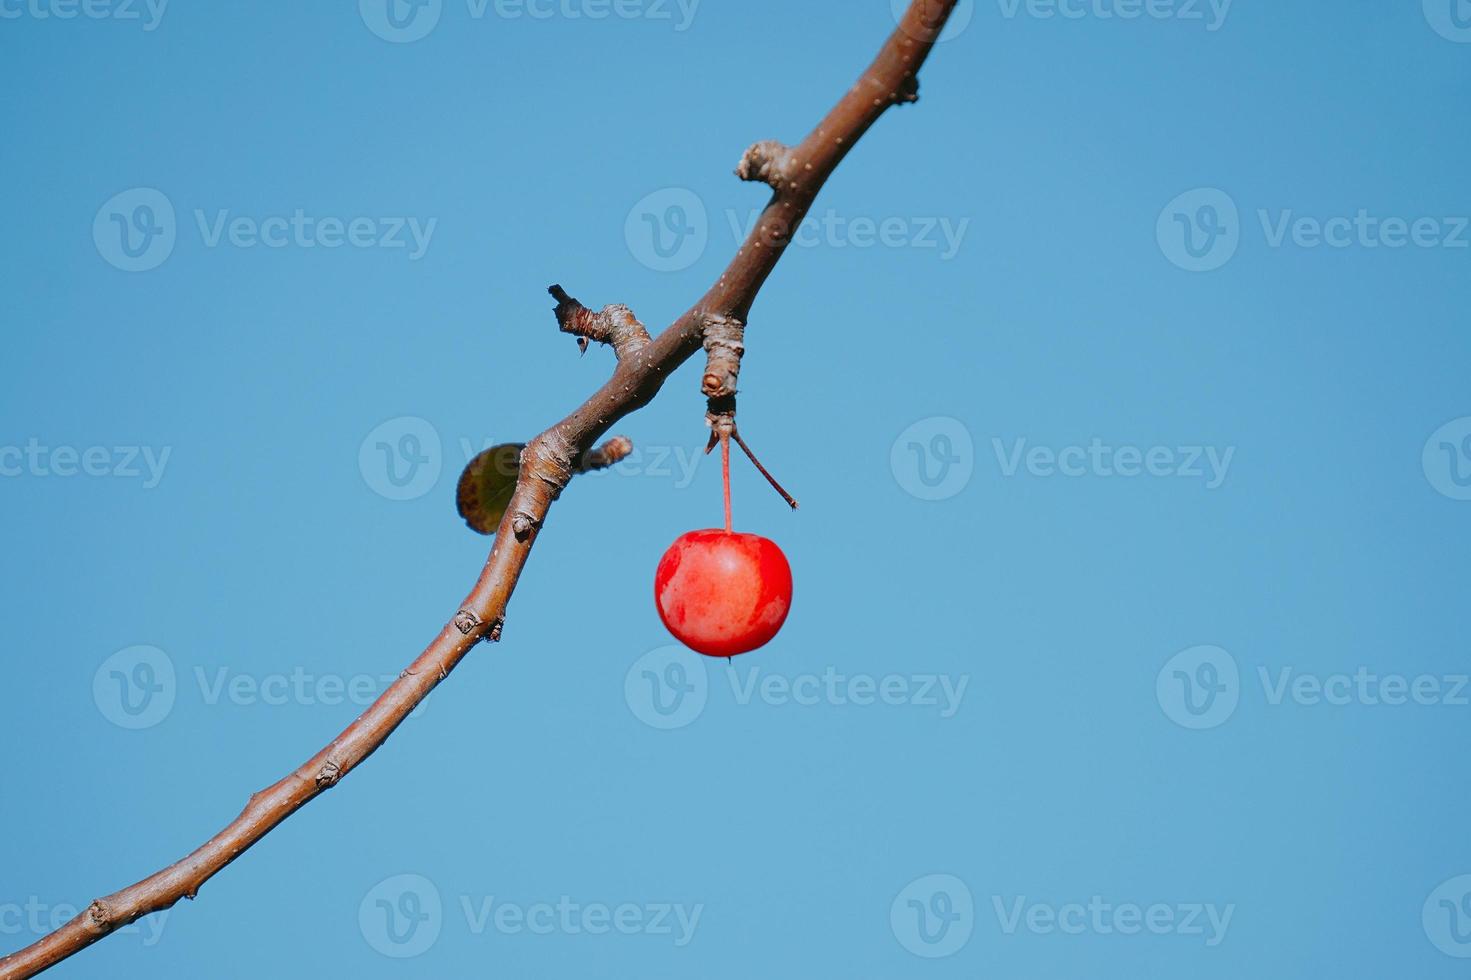 pomme rouge, fruit, suspendu, depuis, branche photo